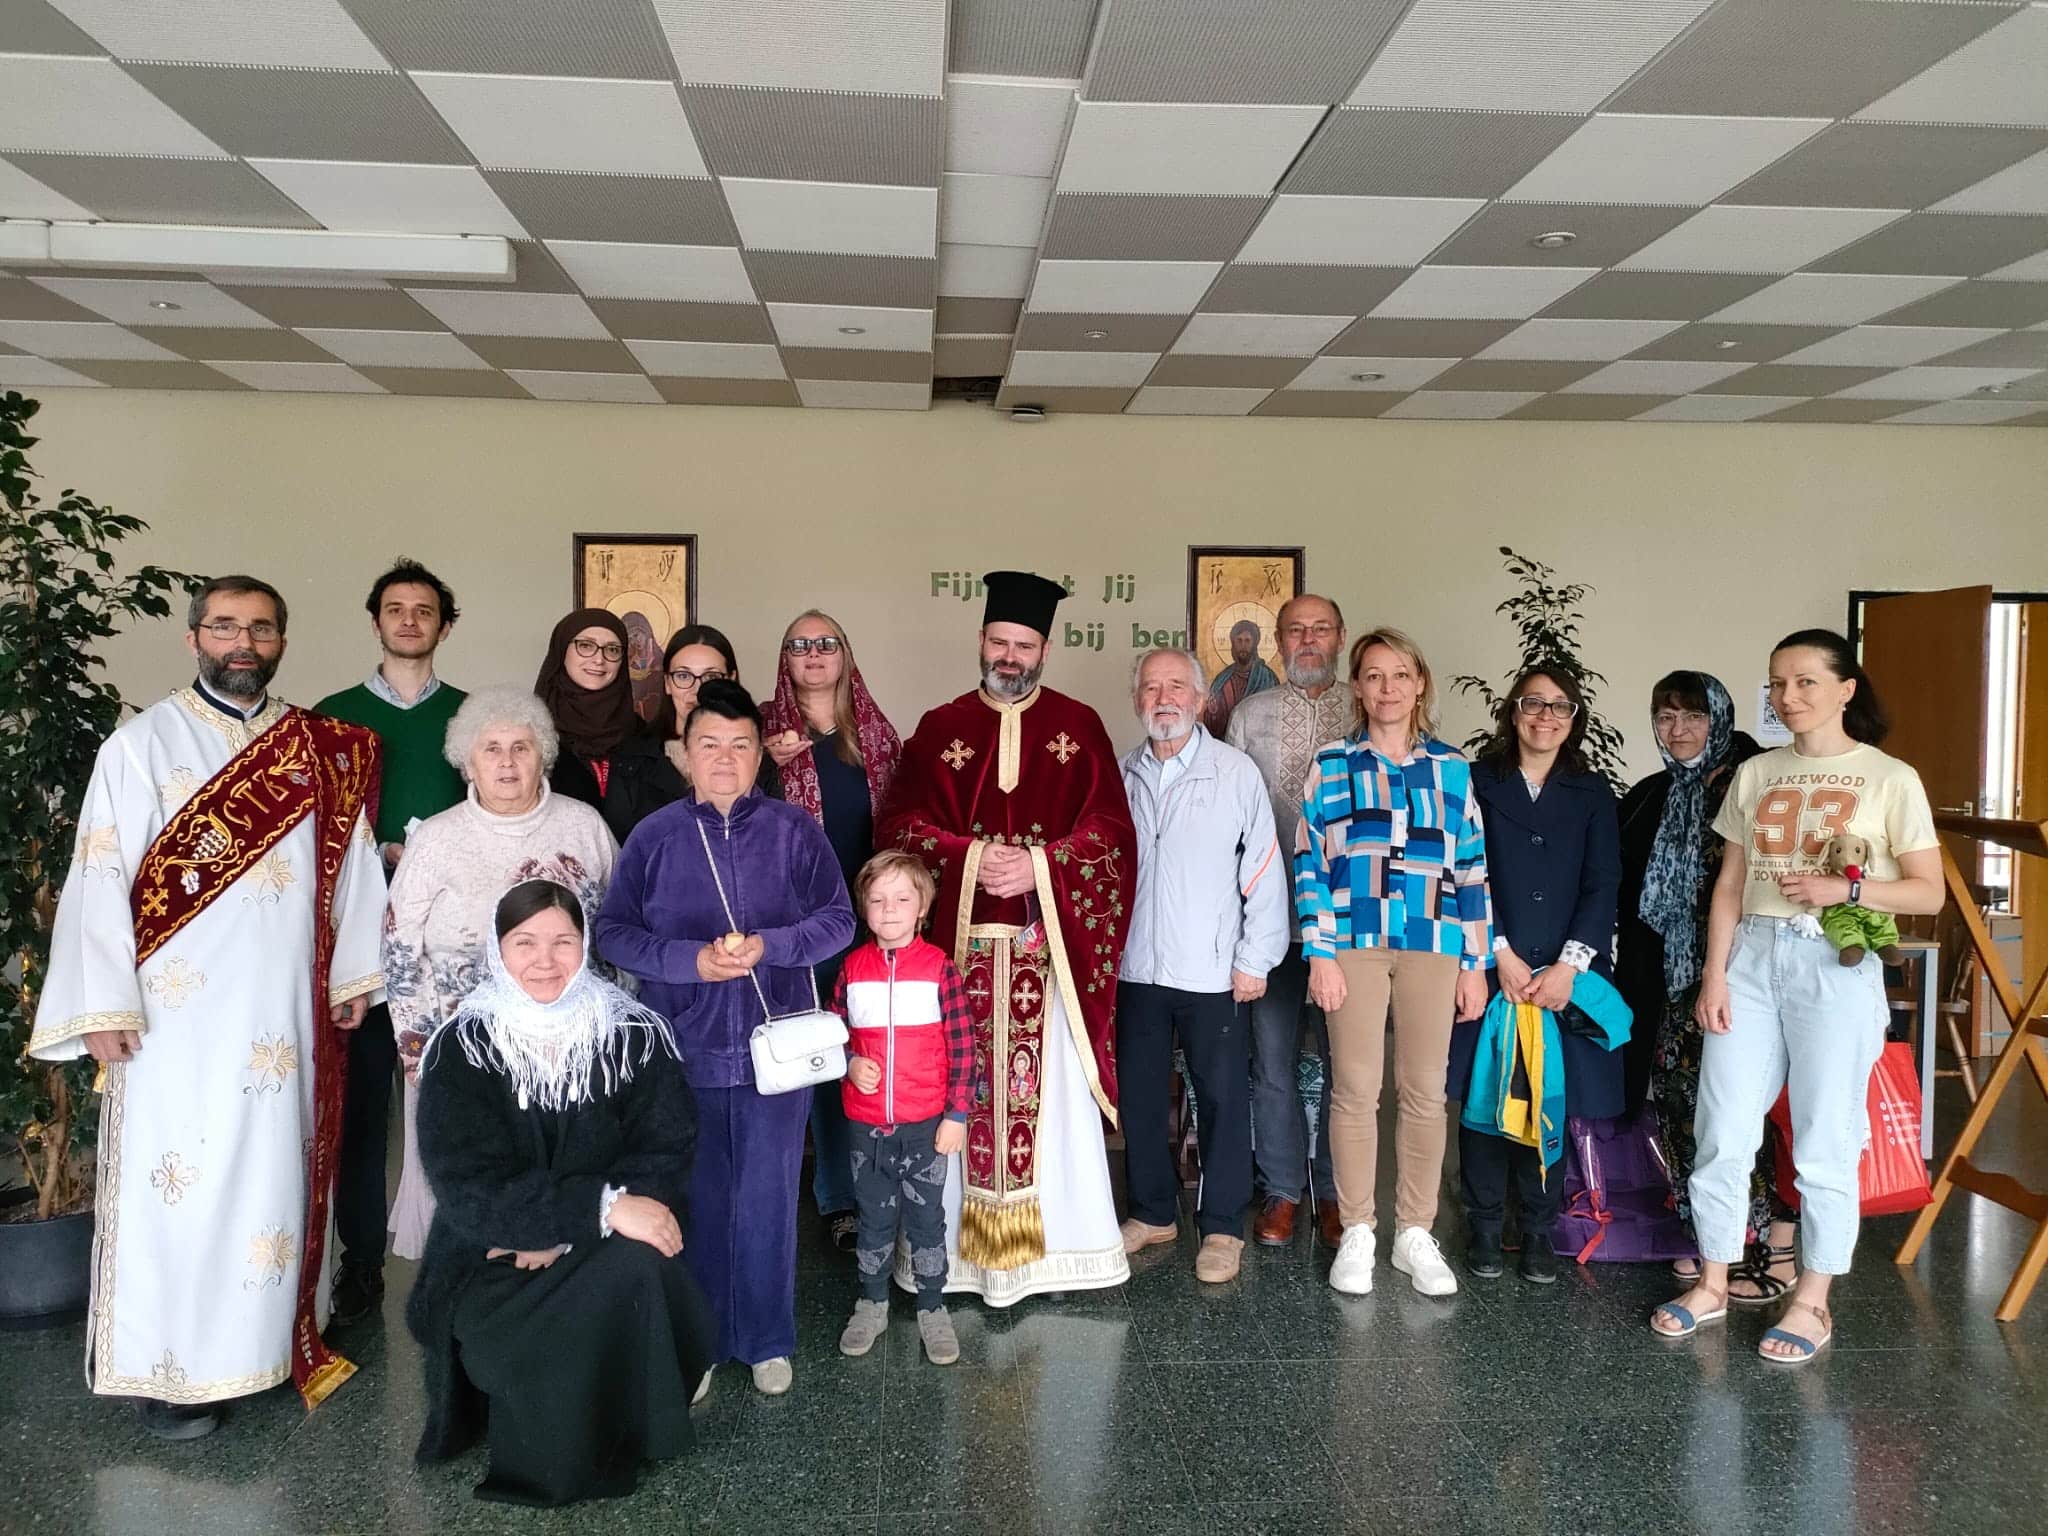 Une liturgie orthodoxe dans un centre d’accueil pour les réfugiés ukrainiens en Belgique